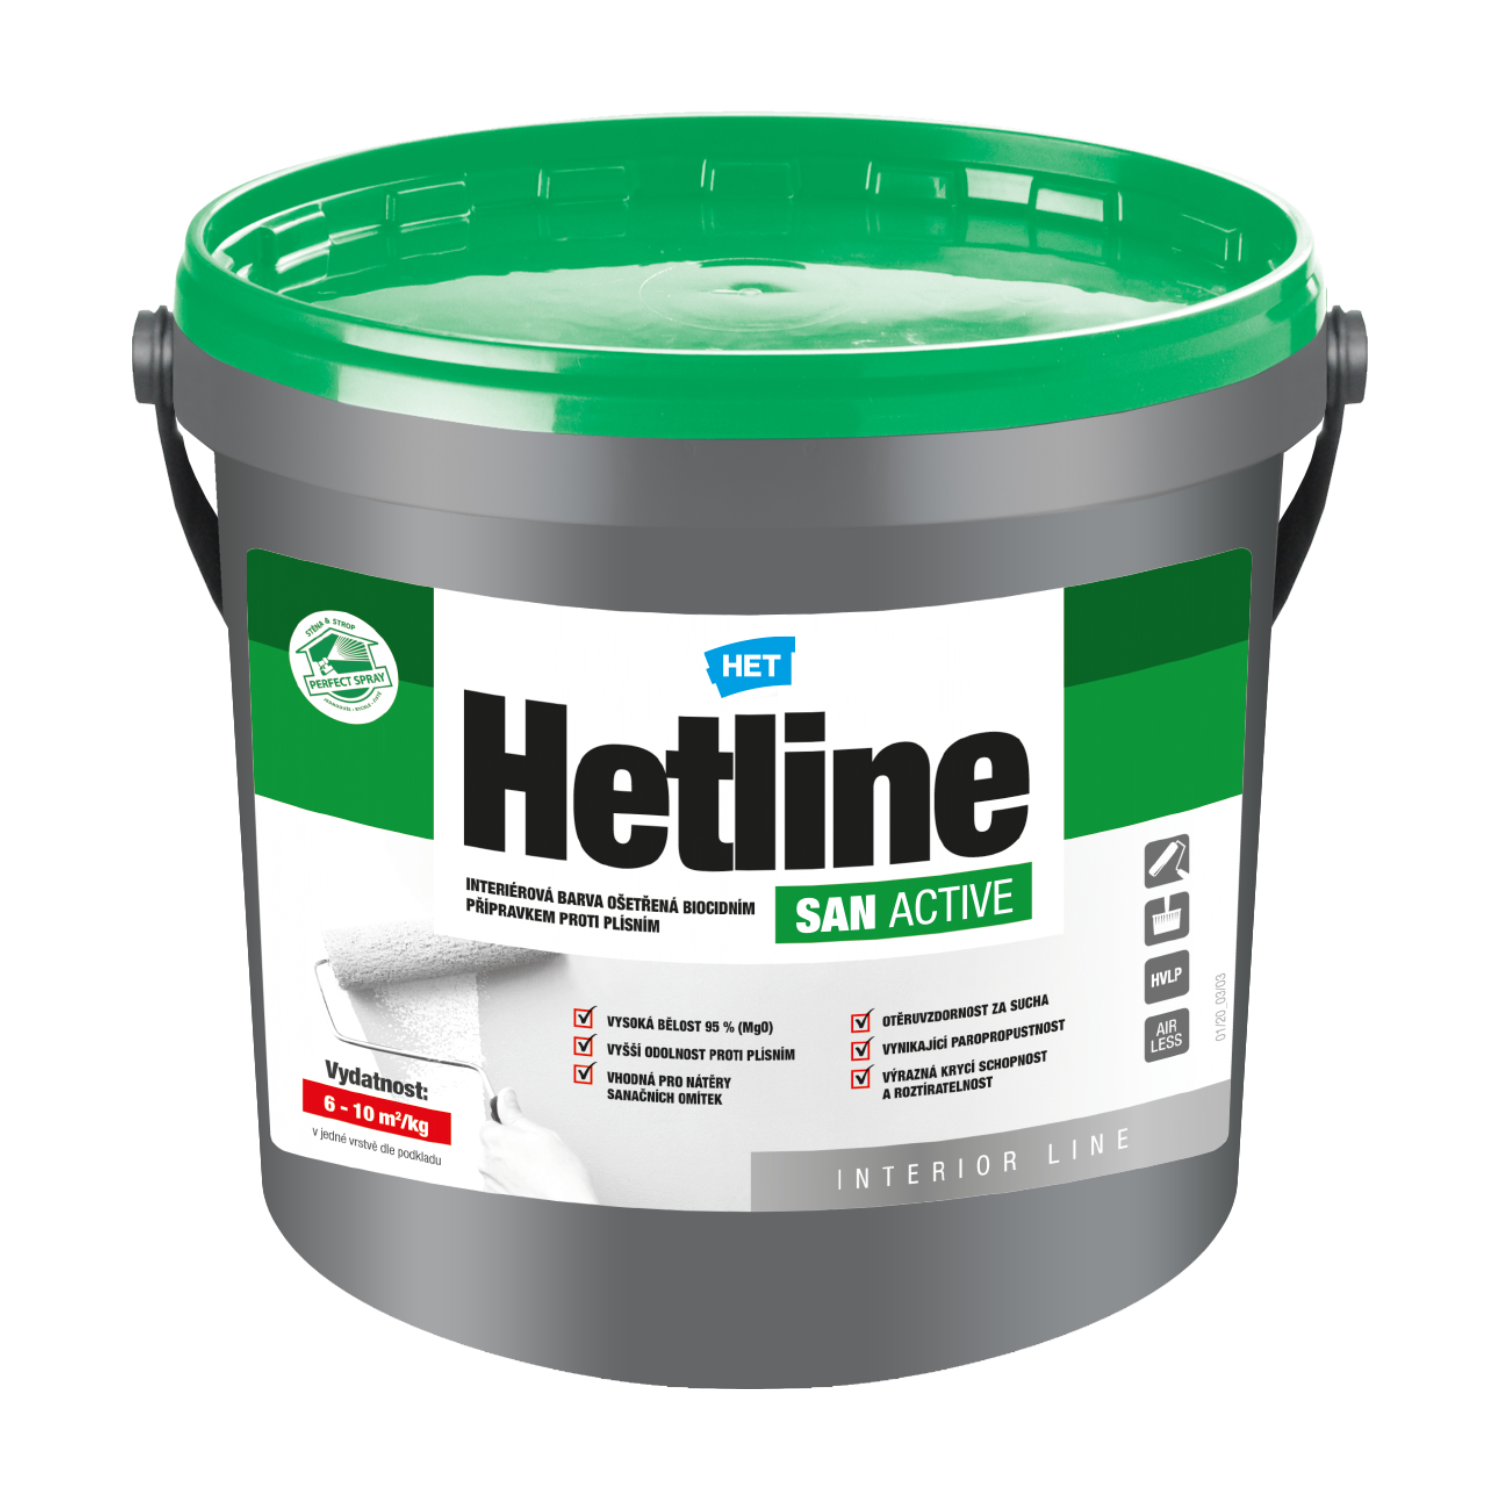 HET Hetline SAN ACTIVE interiérová biela farba ošetrená biocídnym prípravkom proti plesniam 1,5 kg